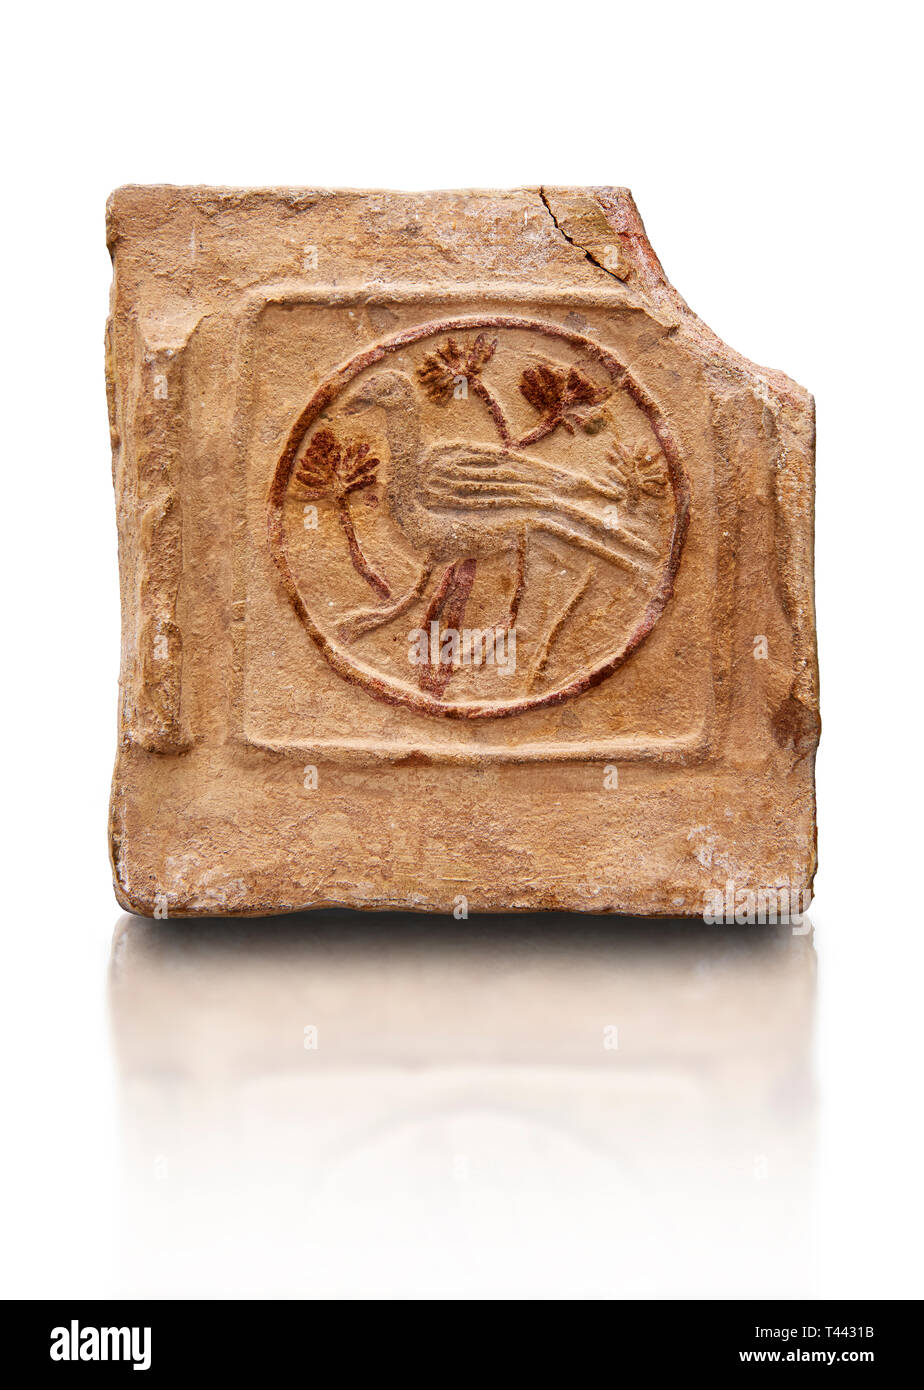 6th-7th Century Byzantinische christliche Terracotta Fliesen mit der Darstellung eines Vogel - in Byzacena produziert - heute Tunesien. Diese frühen Christlichen terracott Stockfoto